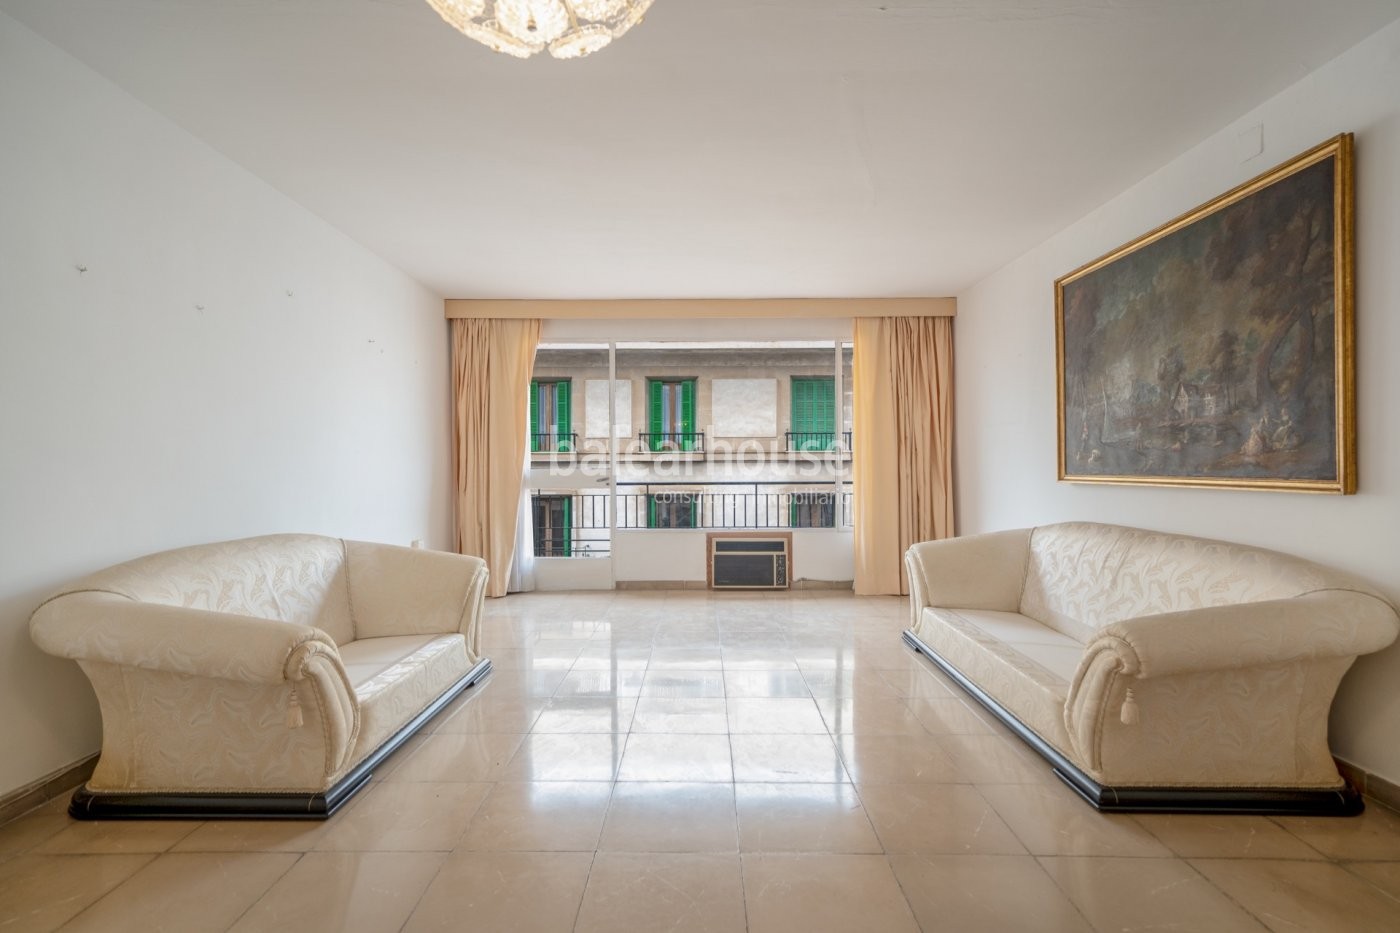 Ausgezeichnete Wohnung voller Licht und eine privilegierte Lage in der Avenida Jaime III in Palma.